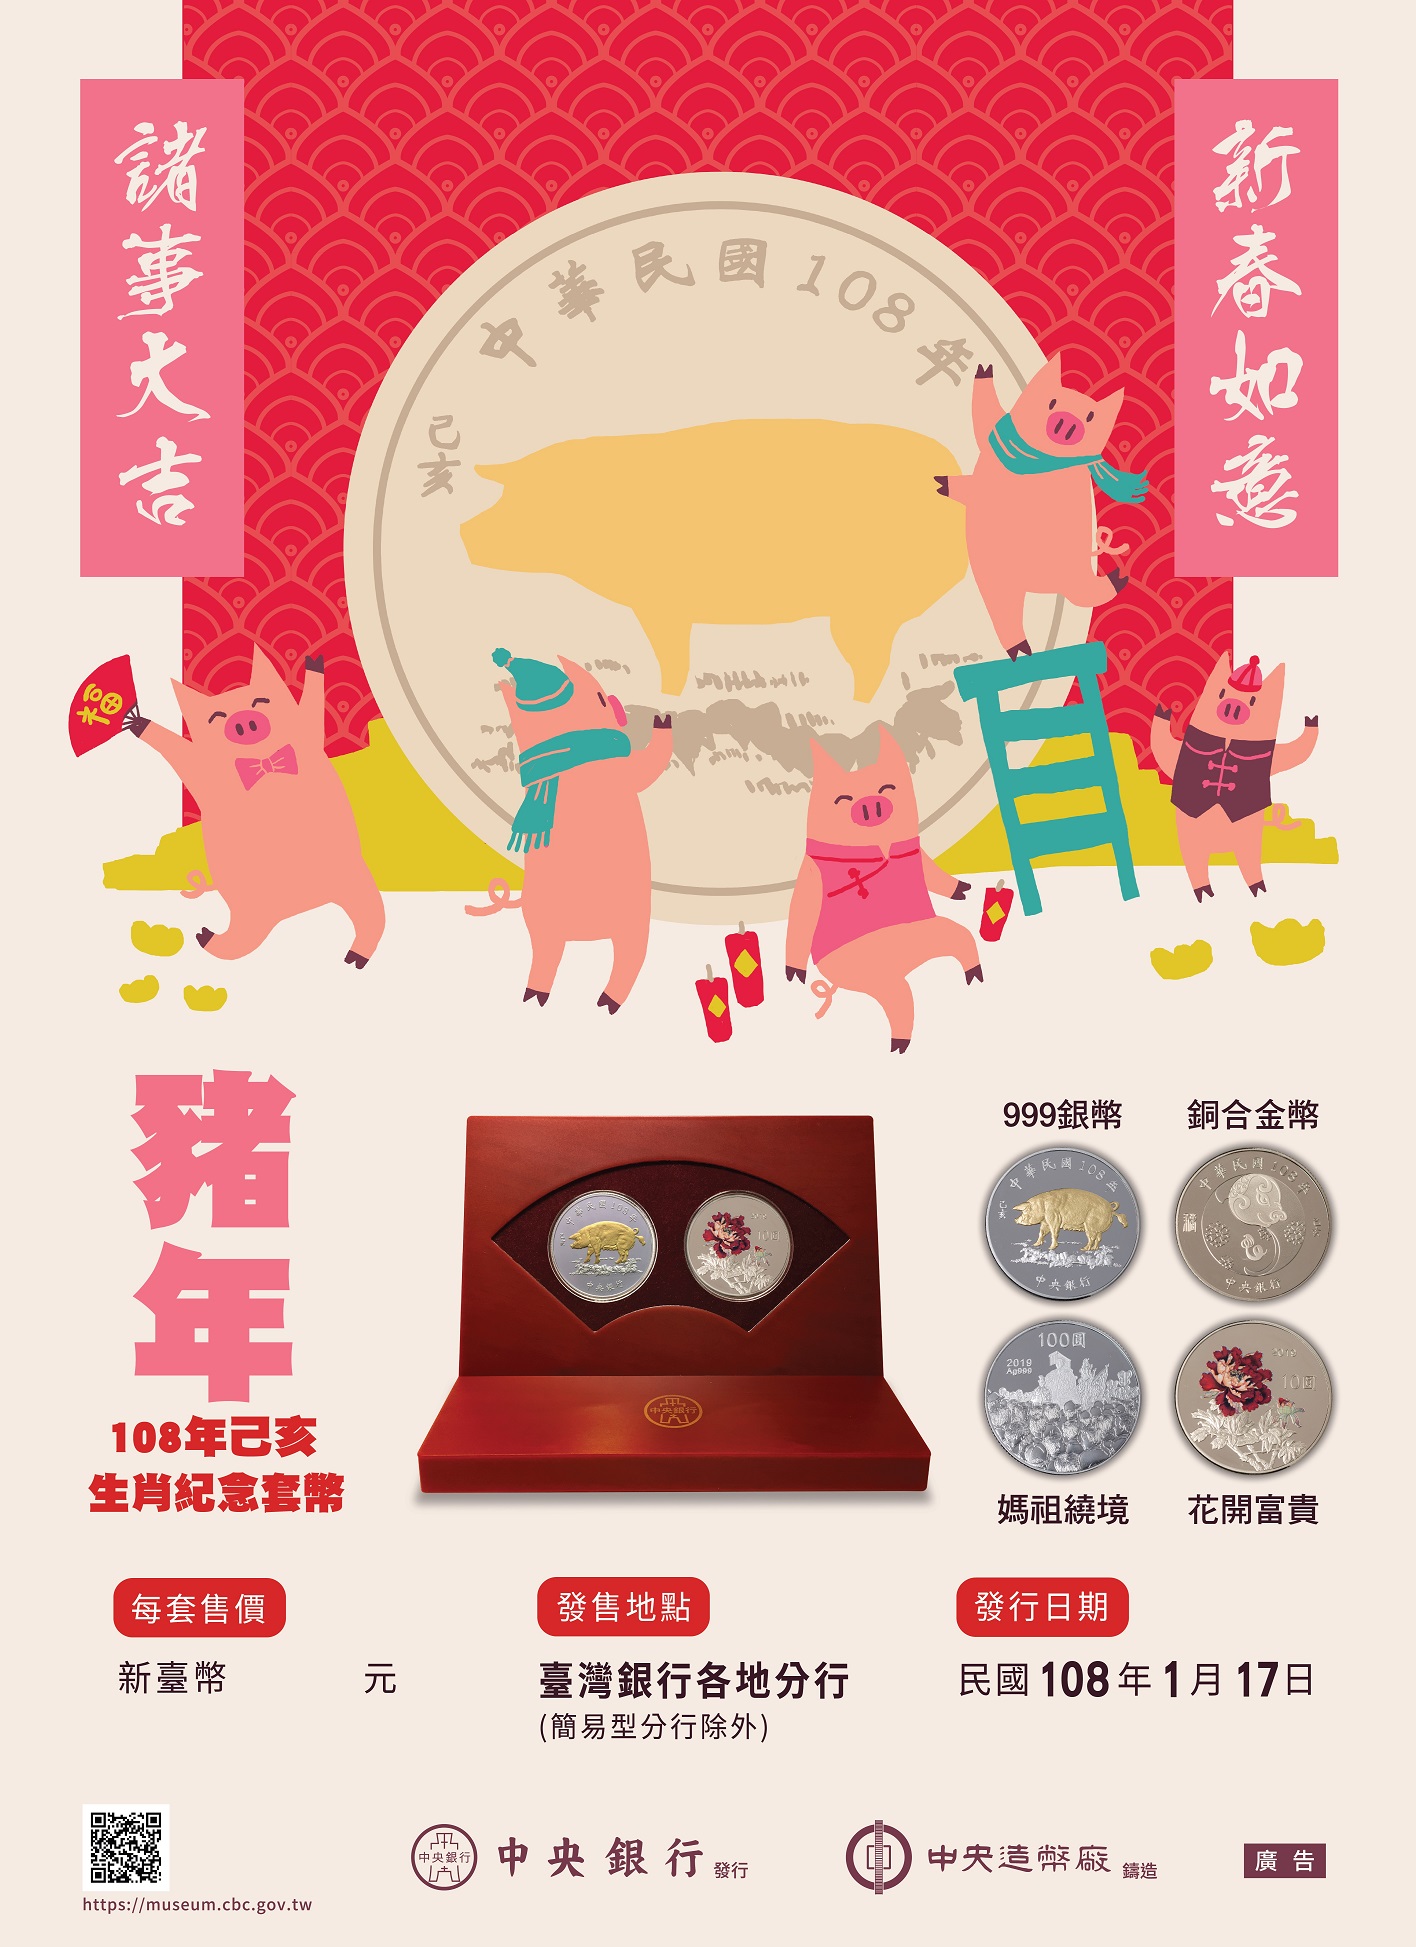 協助推廣中央銀行發行之「己亥豬年生肖紀念套幣」相關宣傳海報